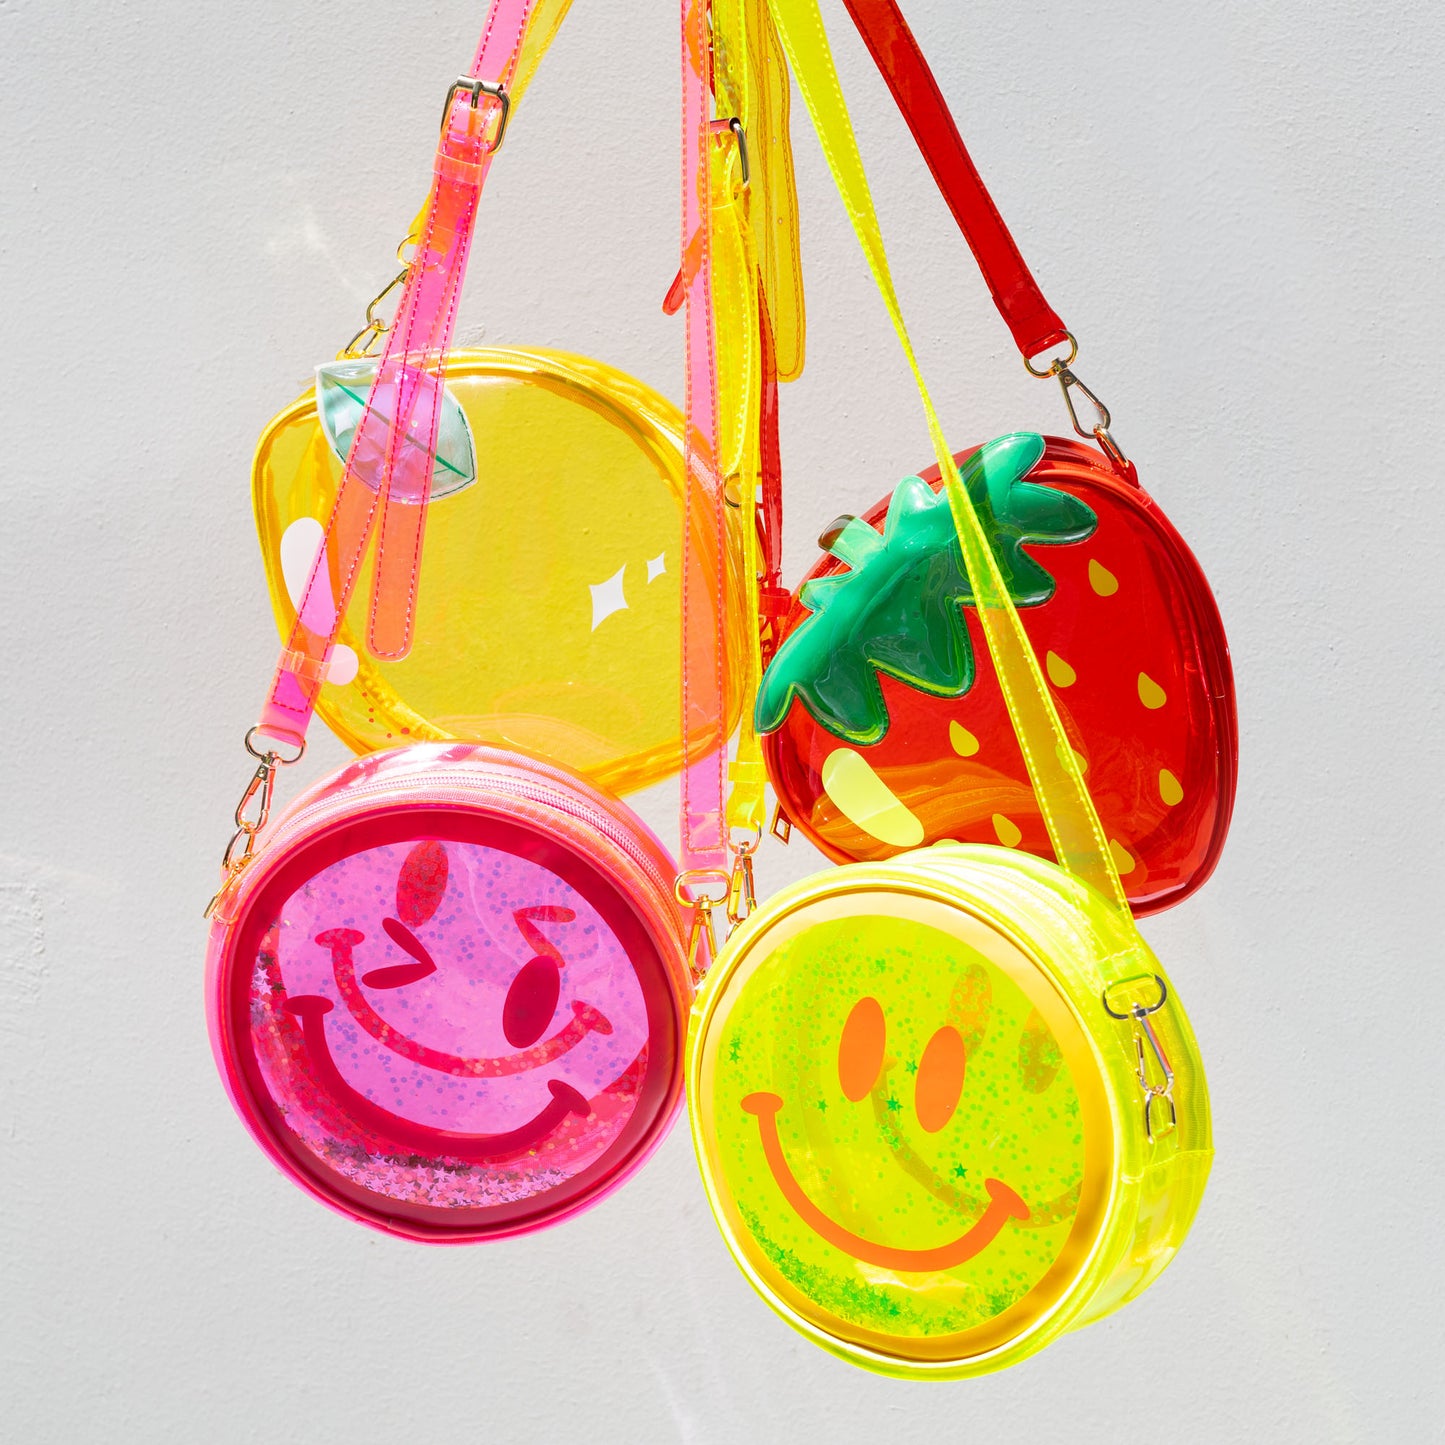 NEW! Jelly Fruit Handbag - Yellow Winky Face 💛 😉